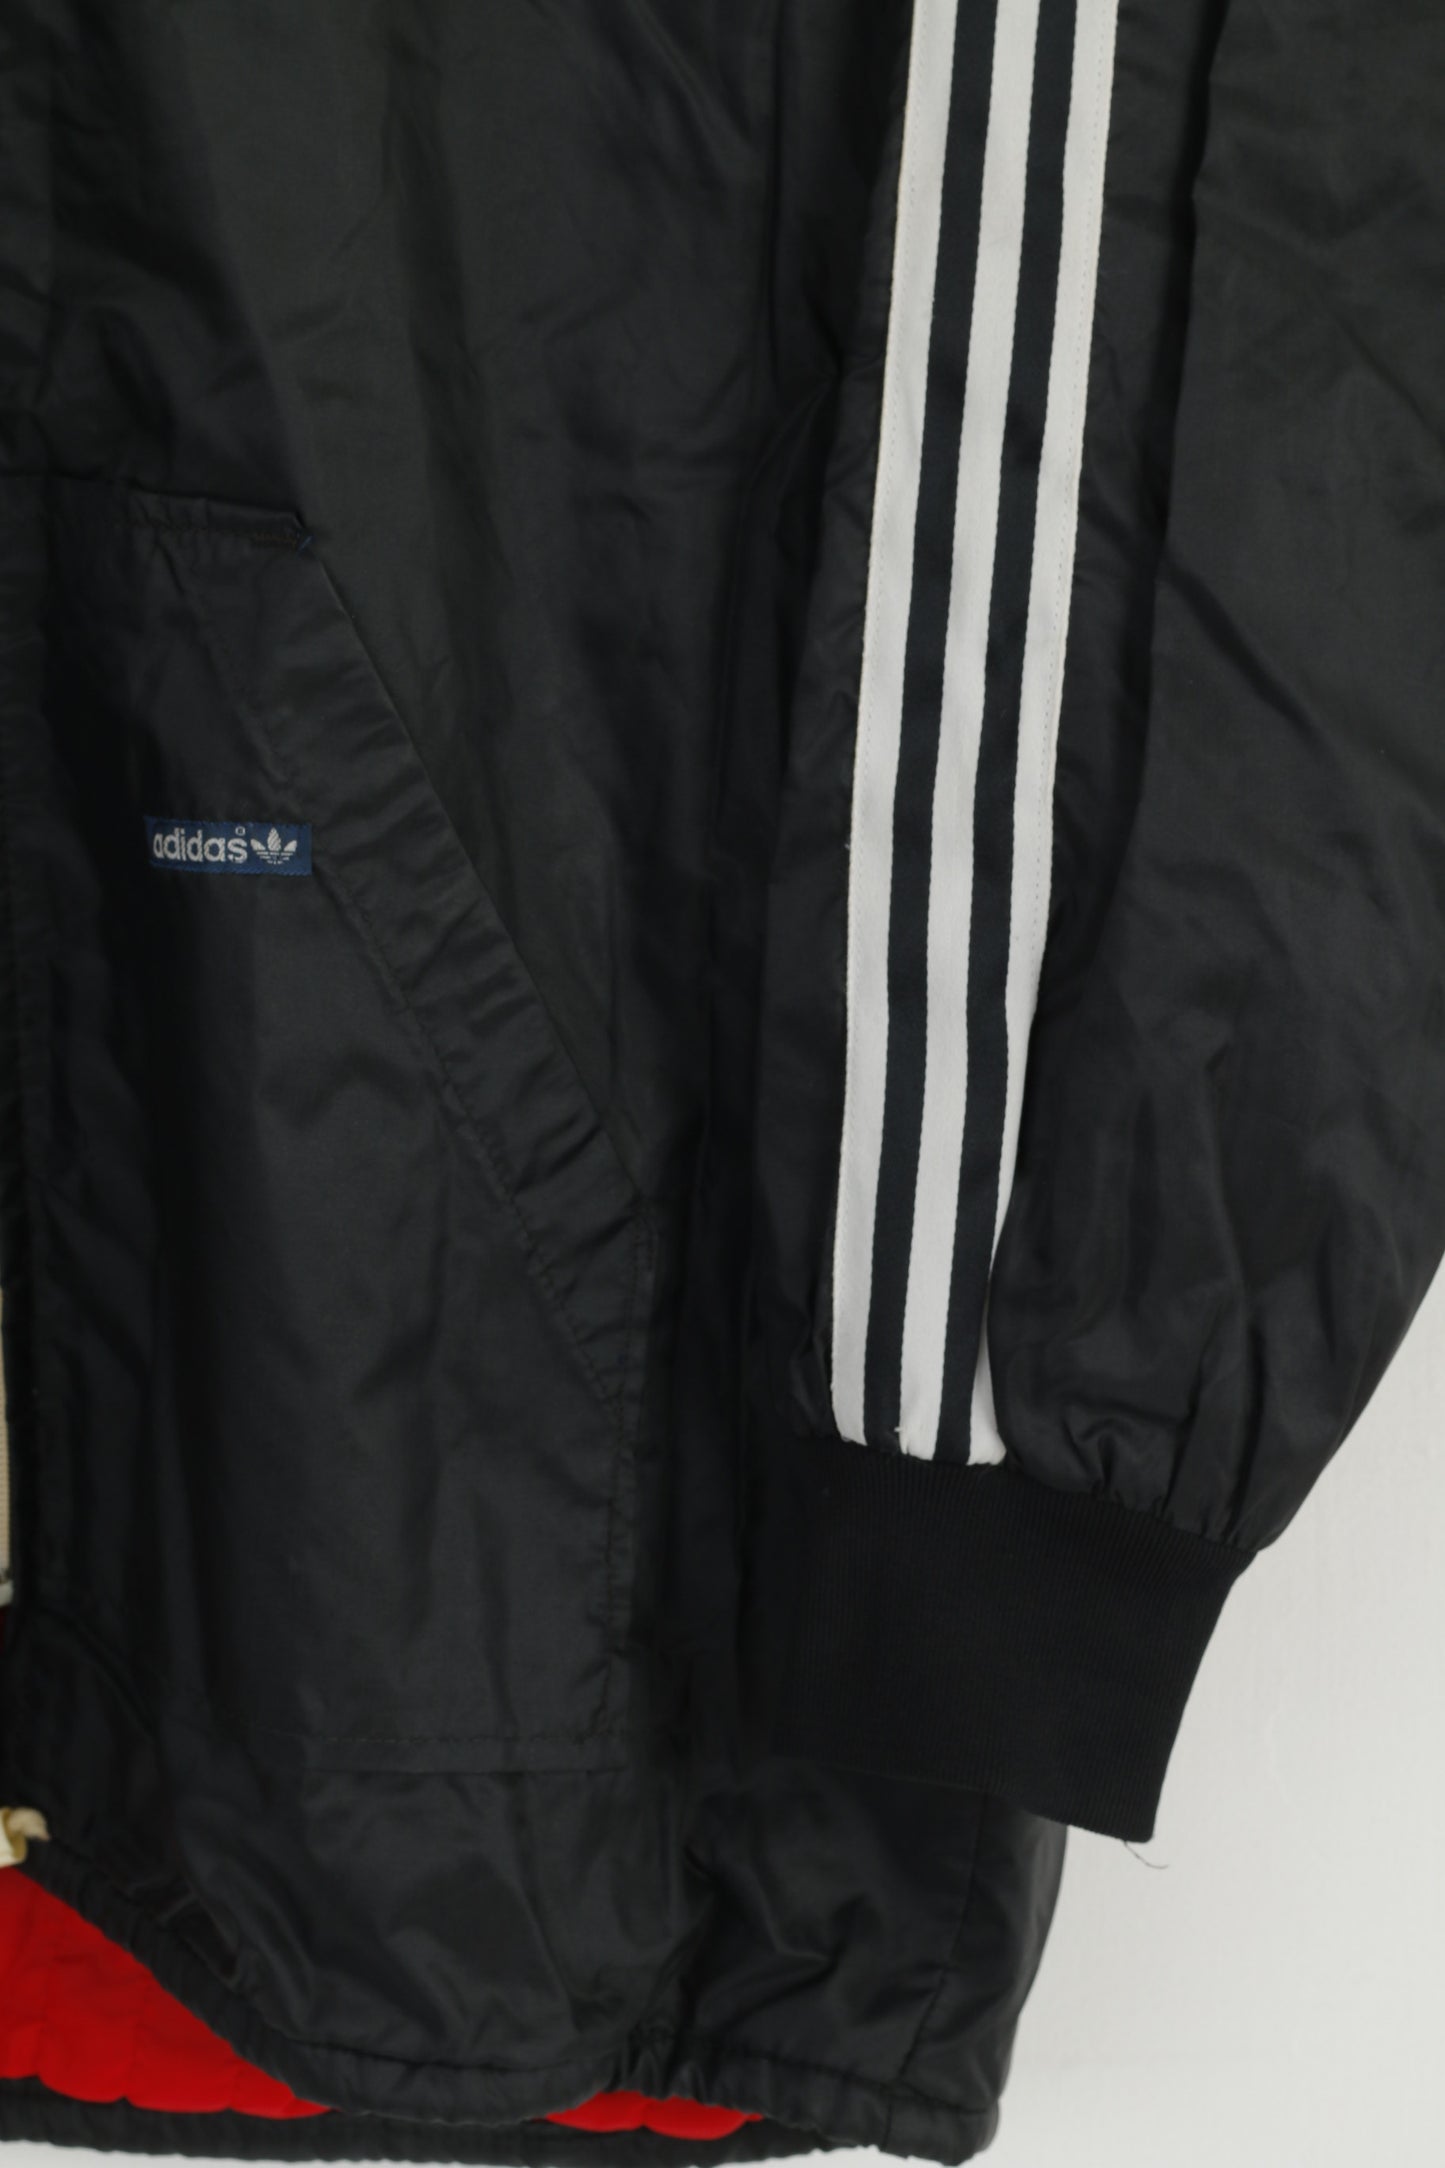 Giacca Adidas da uomo M vintage anni '80 in nylon nero con cerniera intera cappuccio nascosto Oldschool